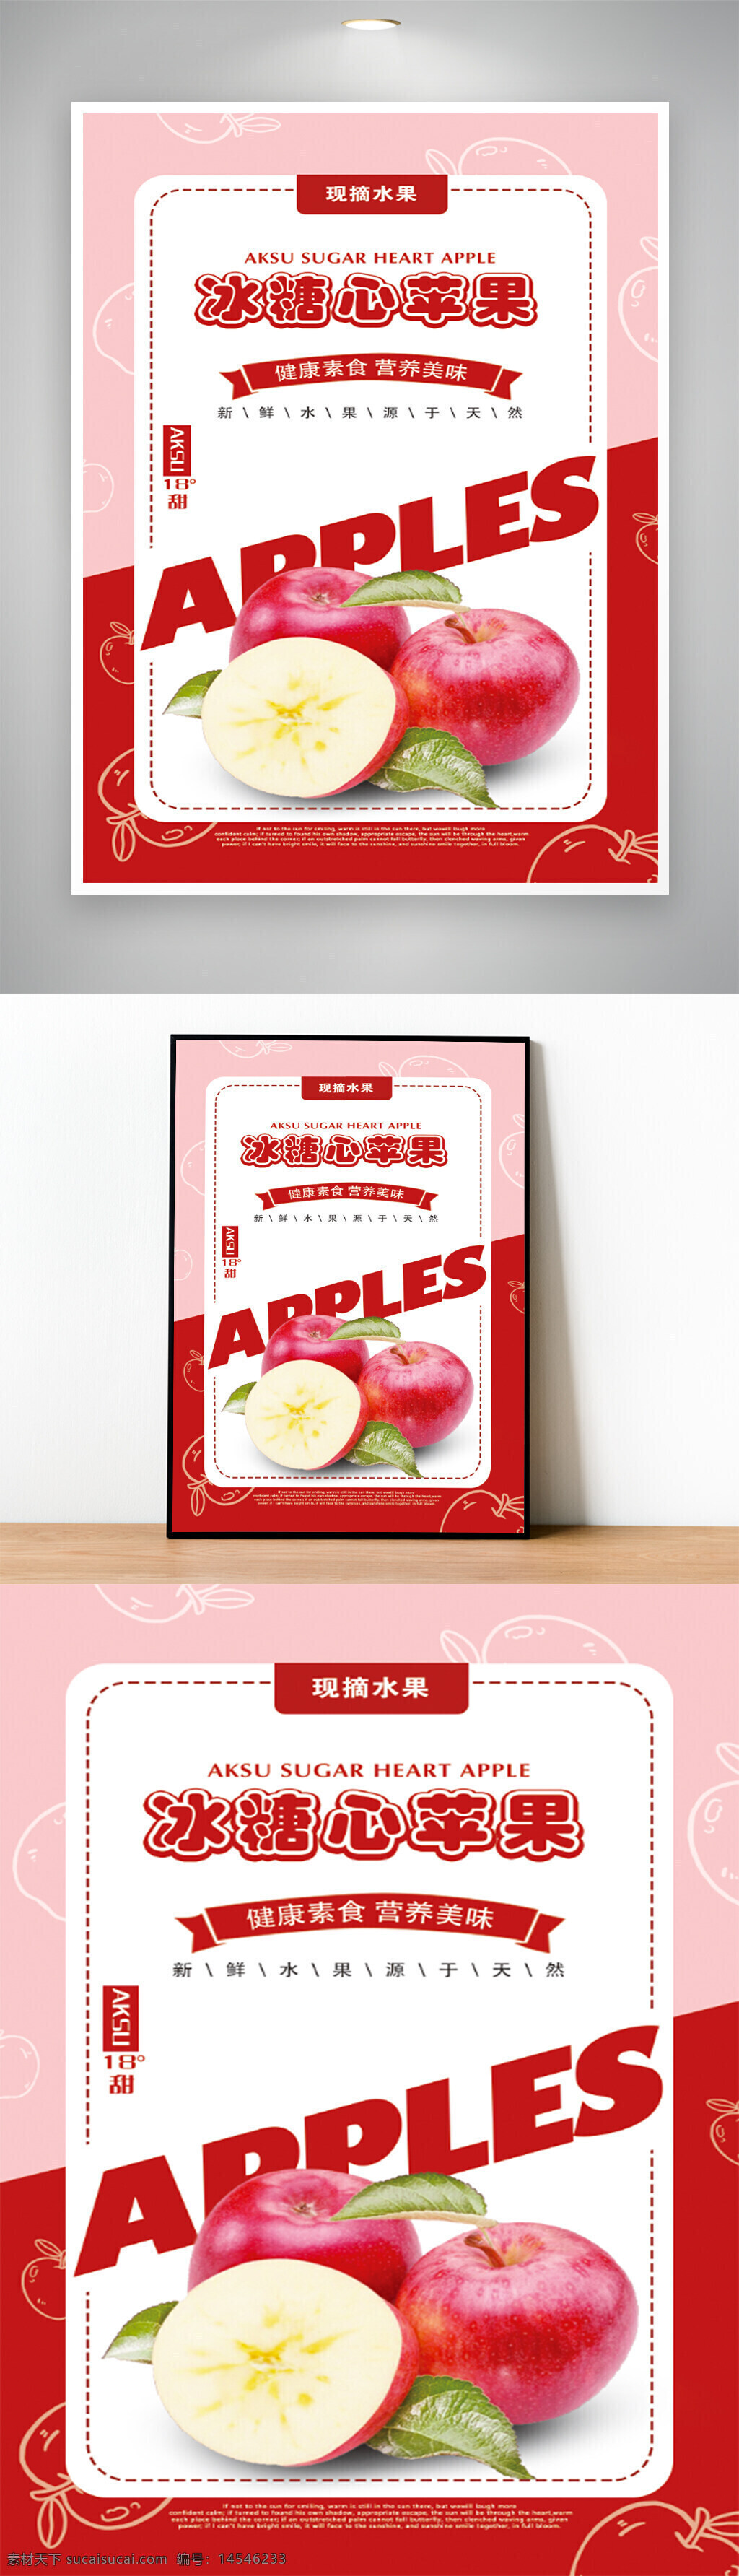 苹果 水果 冰糖心 红苹果 psd 海报 广告纸 彩纸 梨子 红富士 手绘 插画